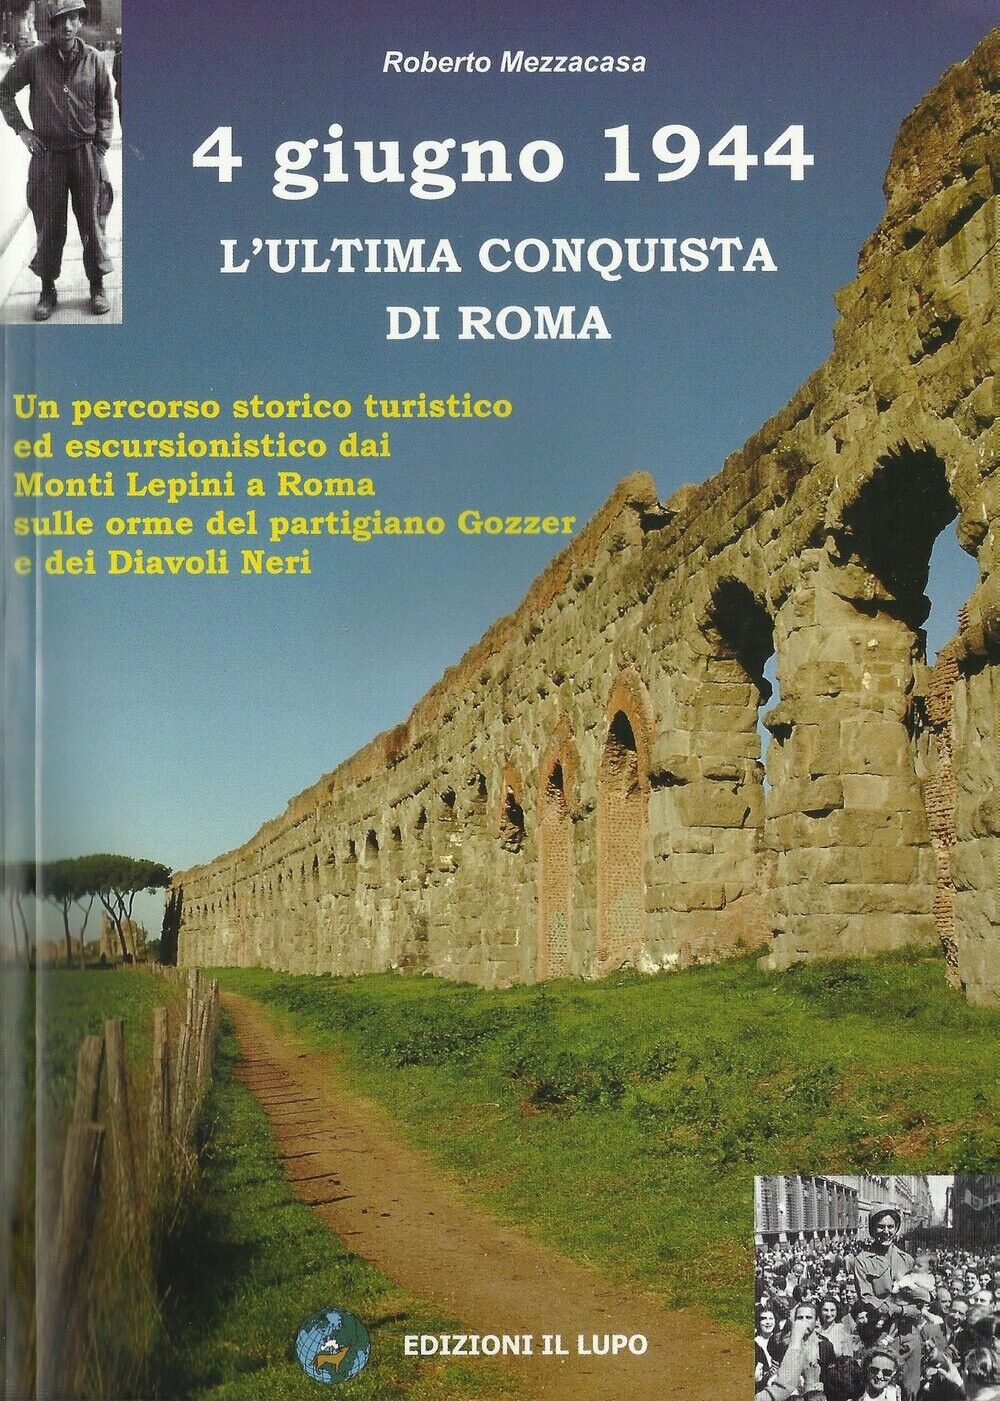  4 giugno 1944. L'ultima conquista di Roma di Roberto Mezzacasa, 2006, Edizio